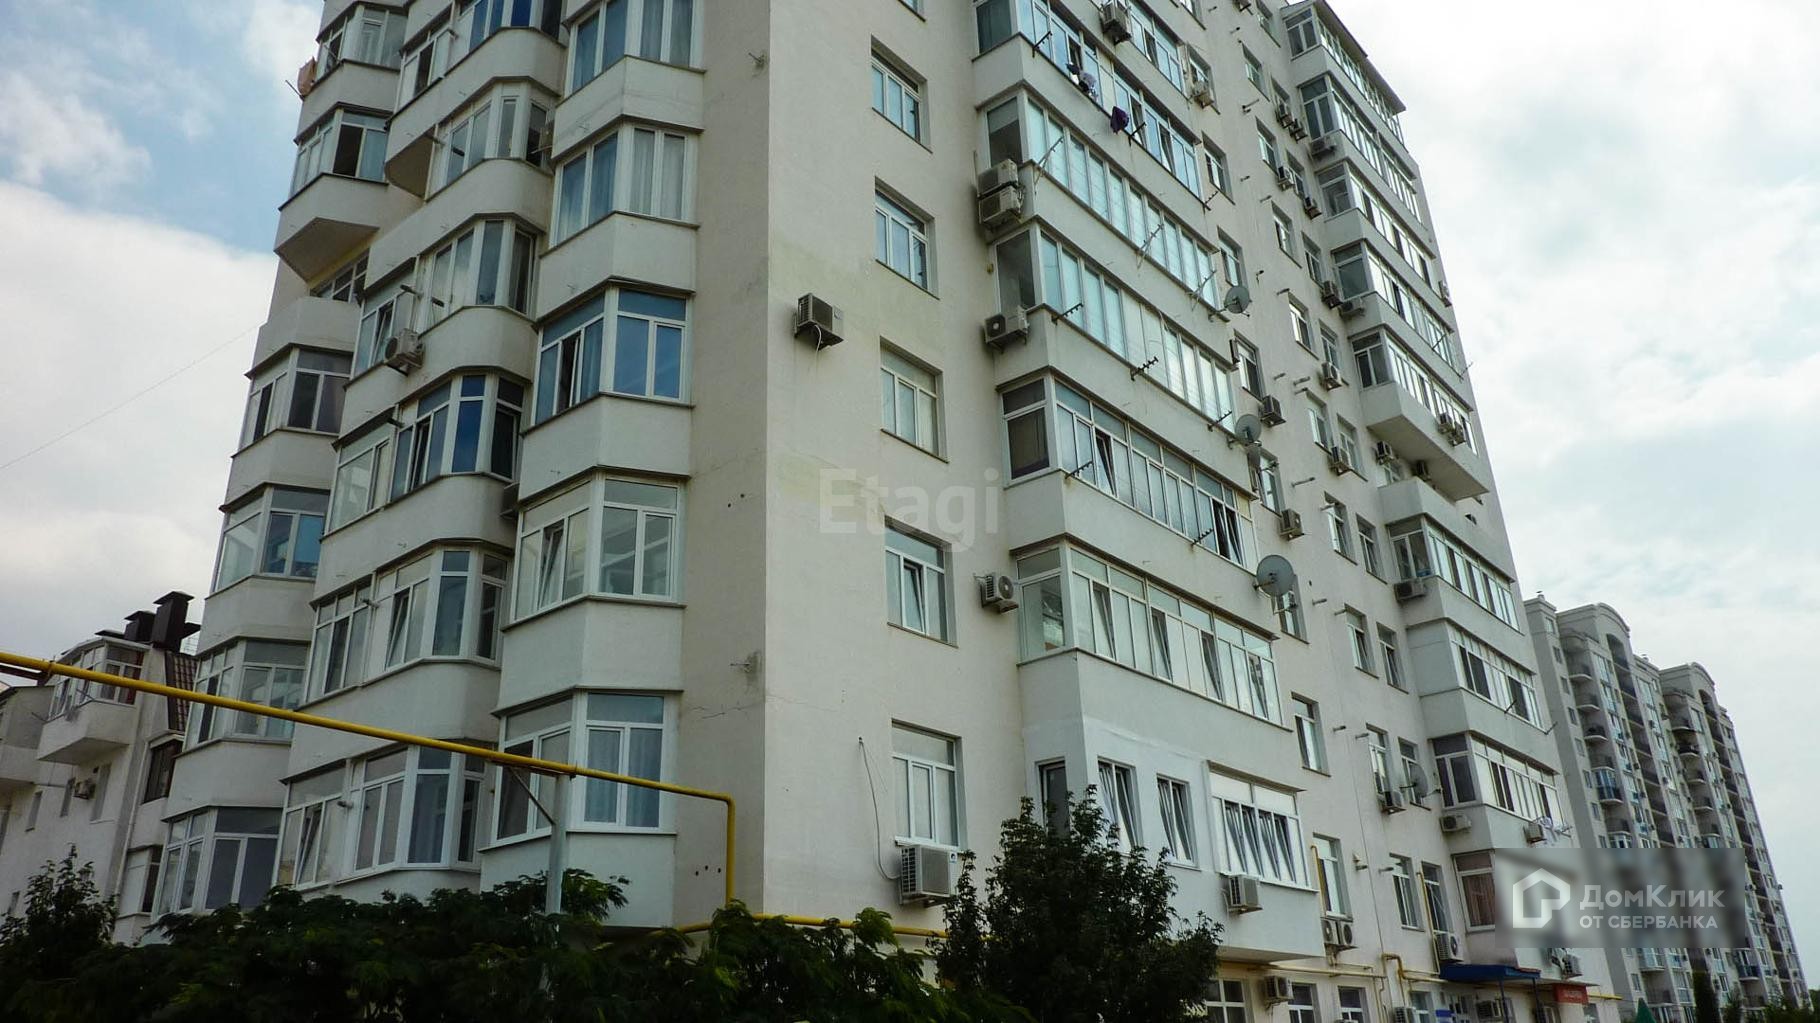 г. Севастополь, ул. Маячная, д. 13-фасад здания